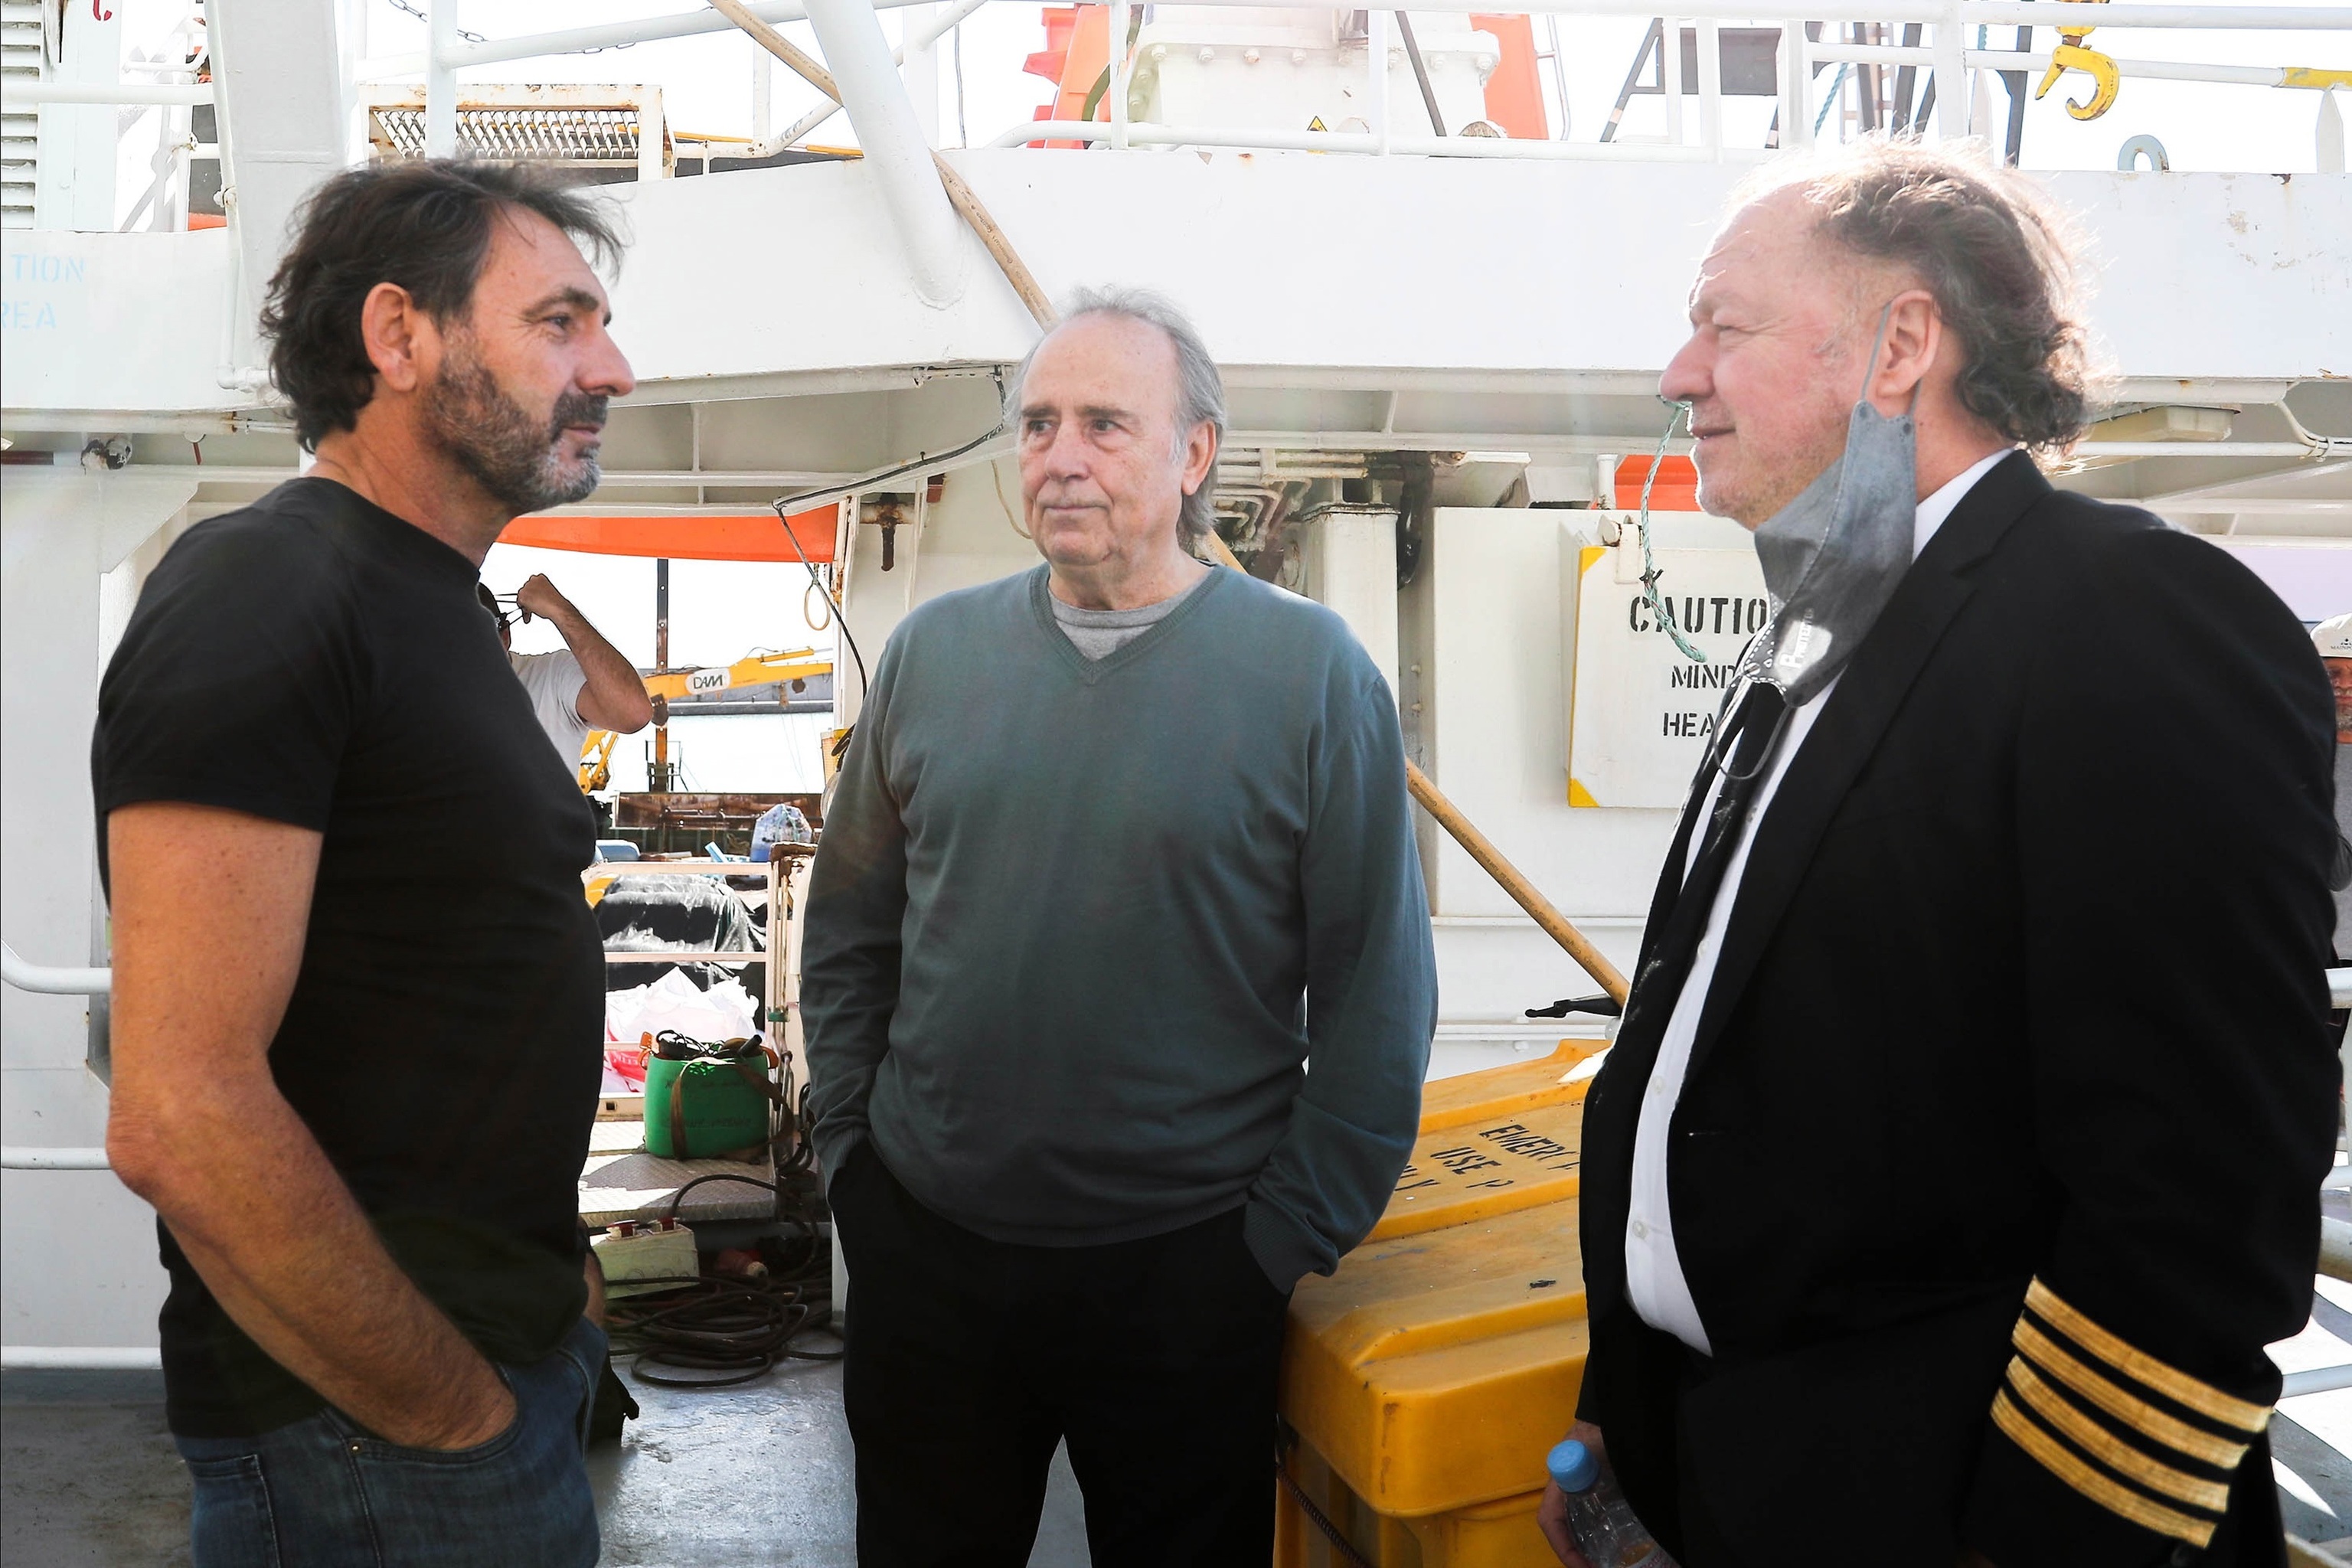 El director de Open Arms, Oscar Camps, el filntropo y fundador de la ONG Solidaire, Enrique Pieyro, y el cantante, Joan Manuel Serrat, a bordo del nuevo buque.